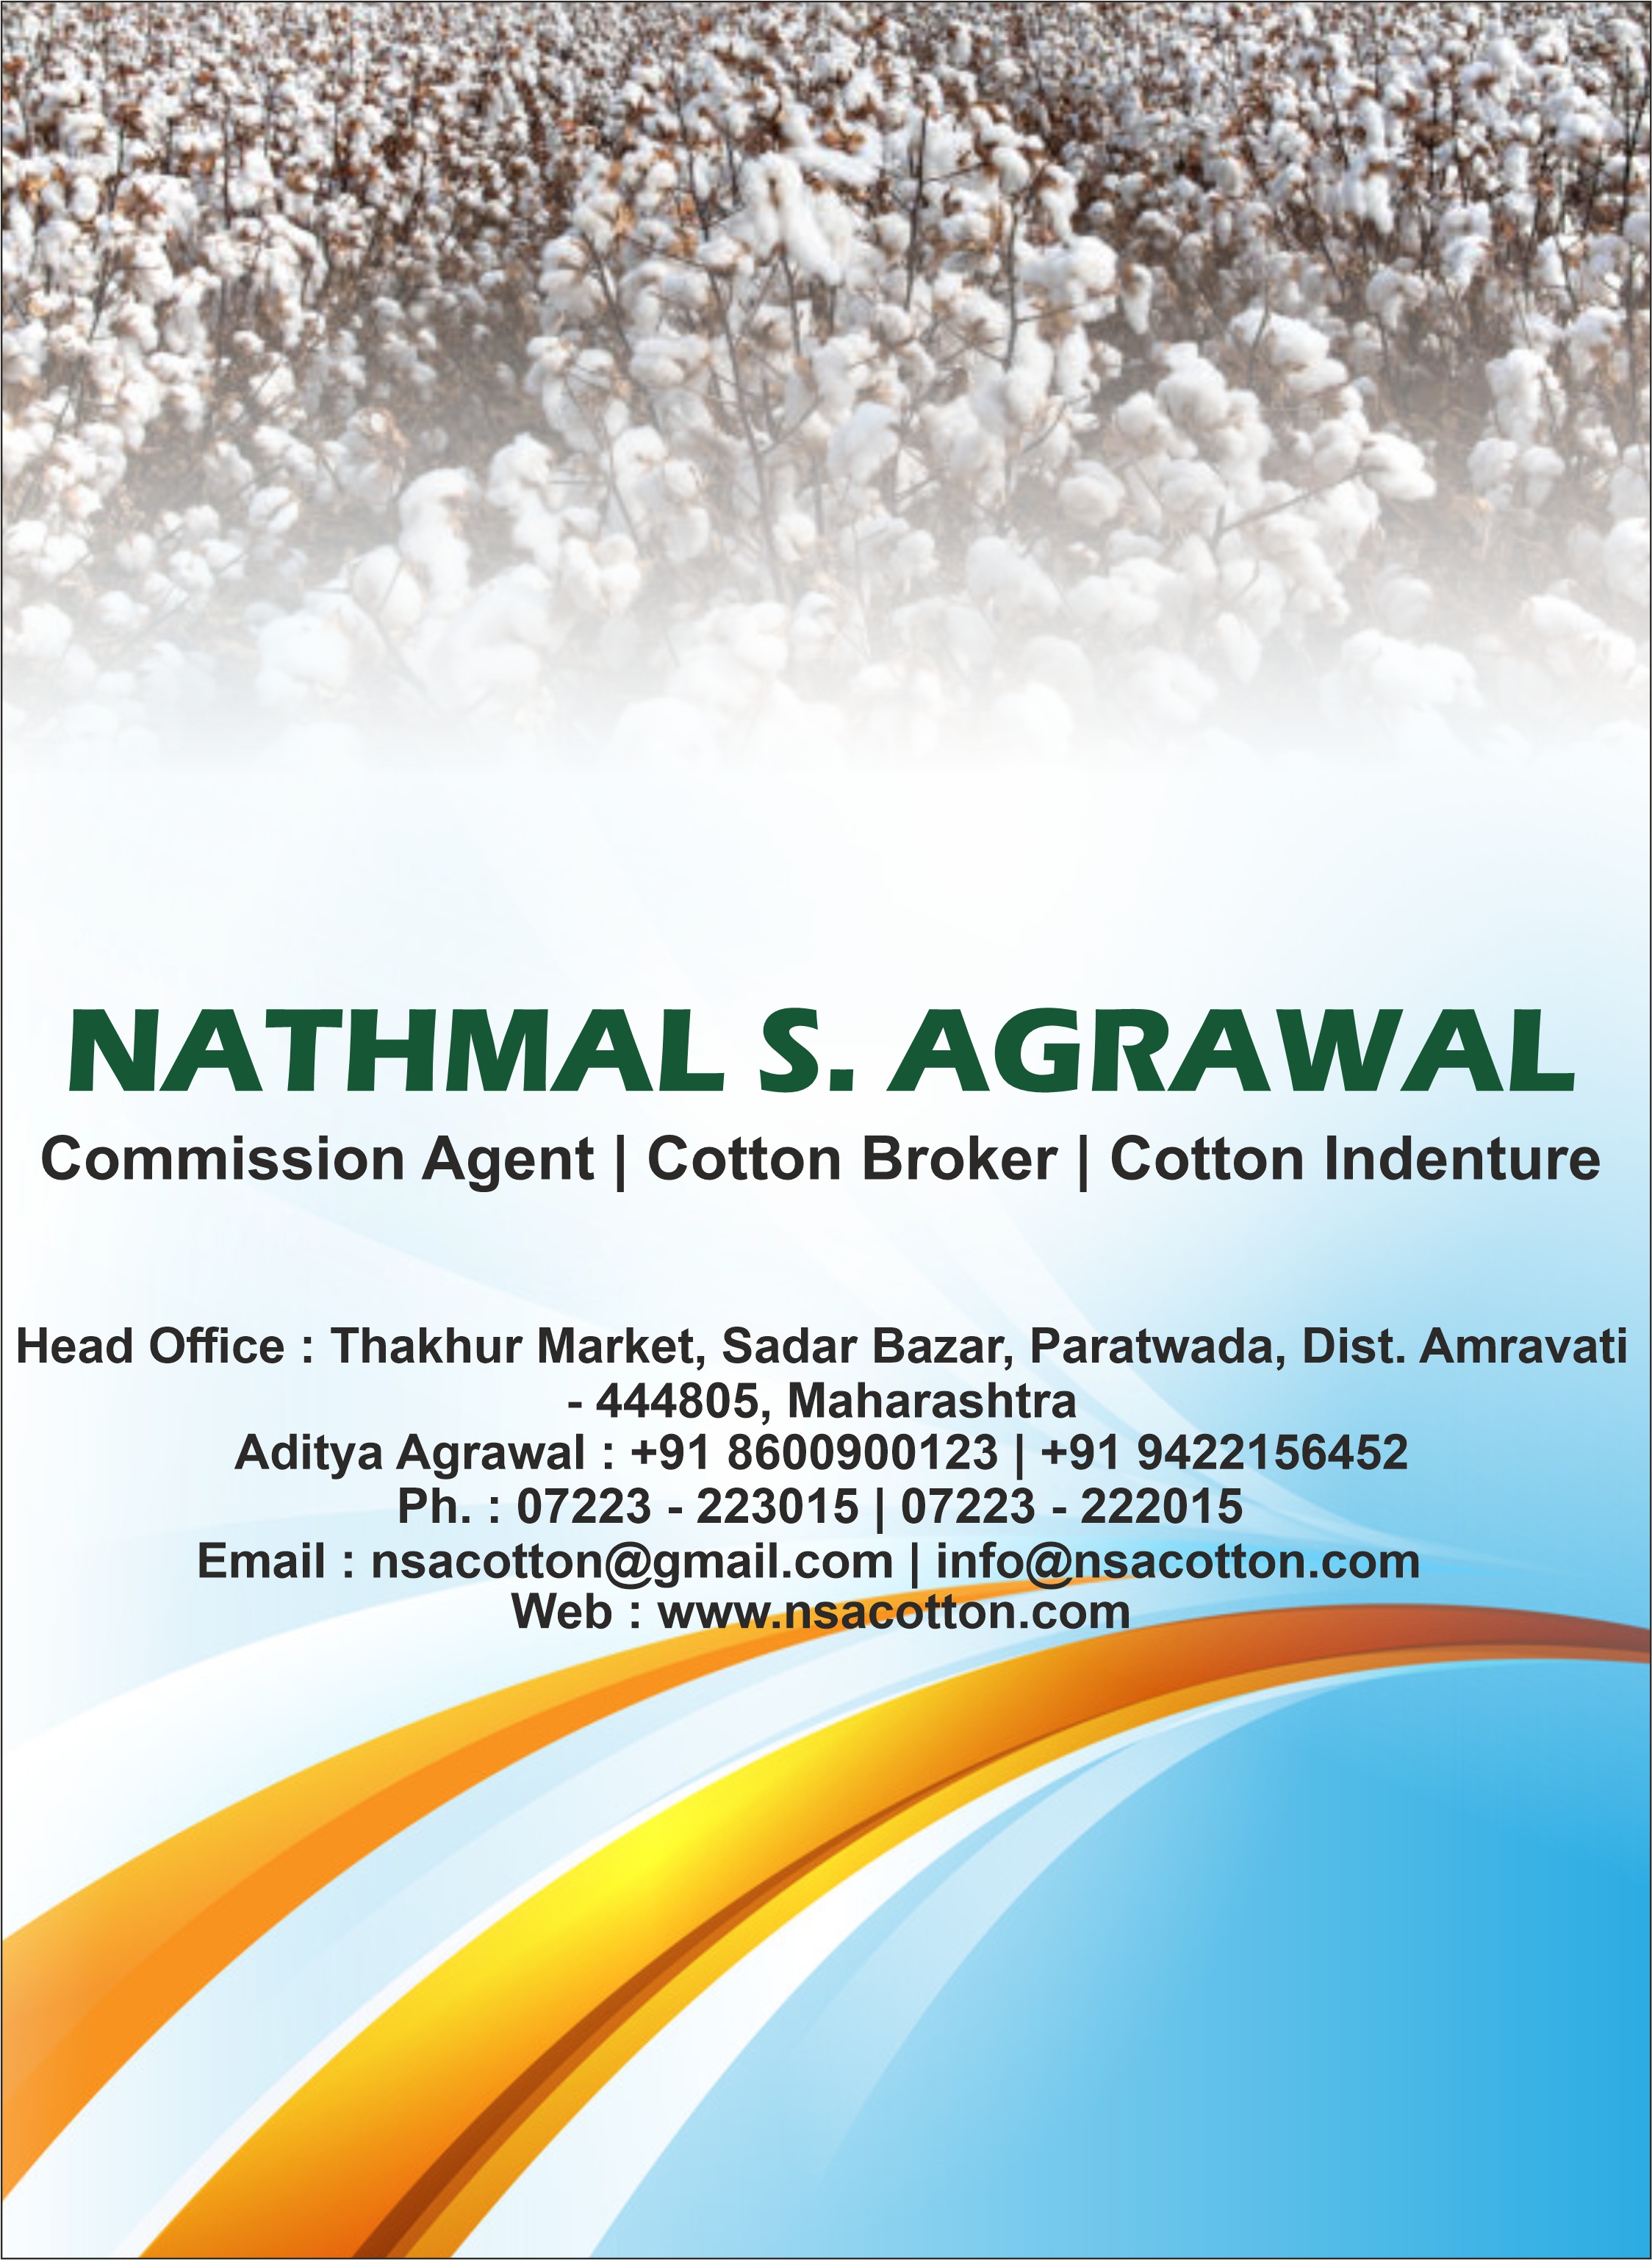 Nathmal S. Agrawal